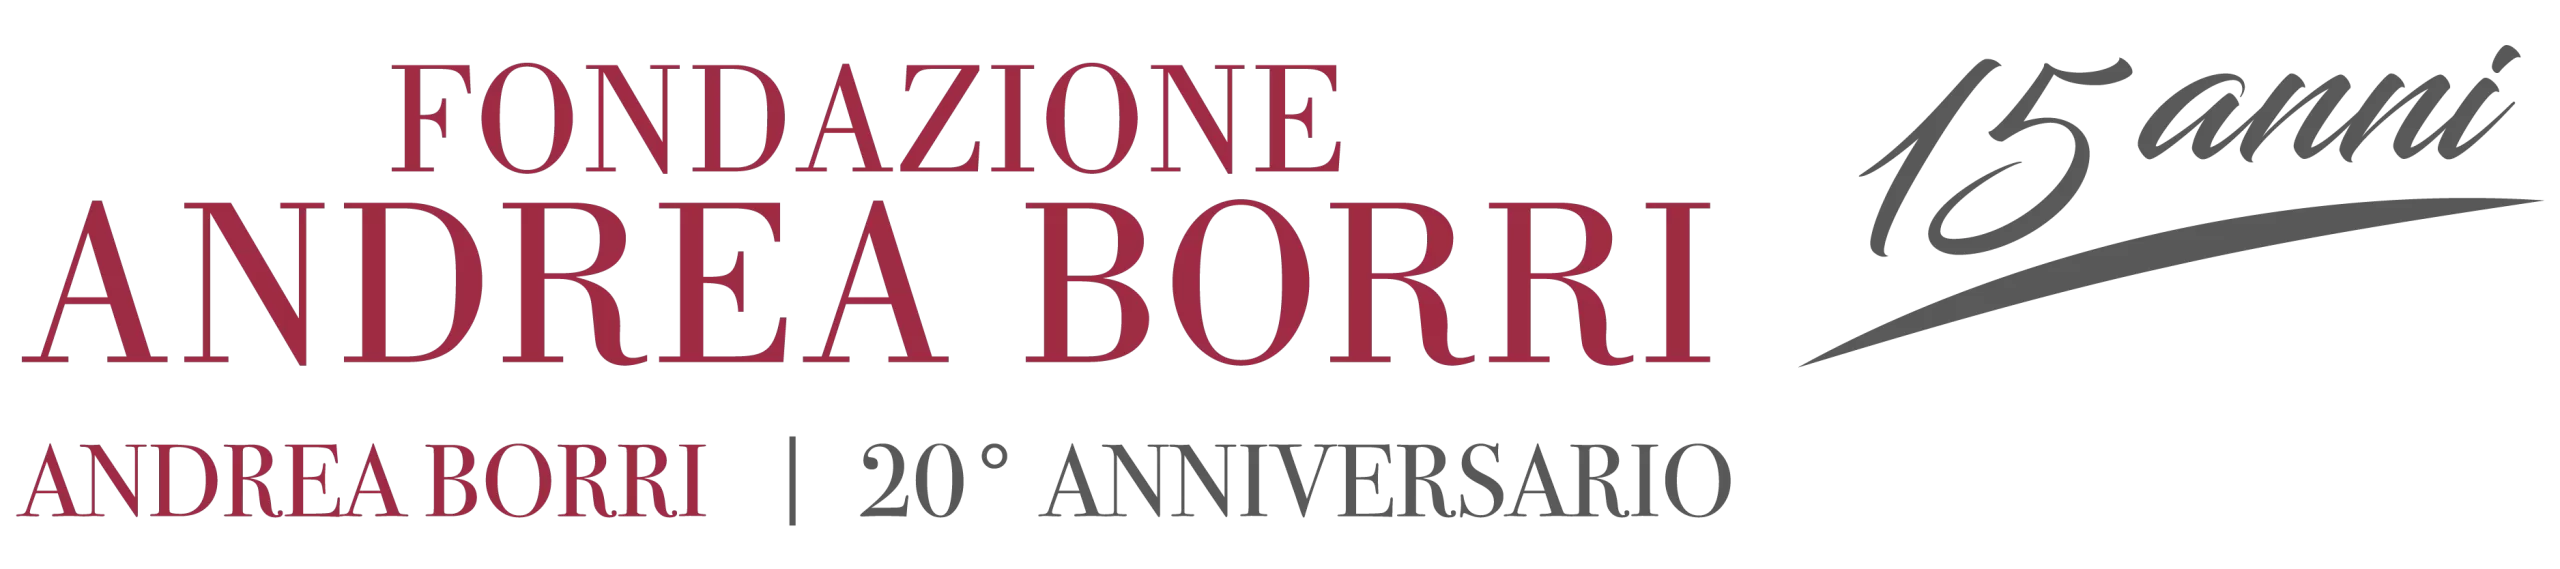 FONDAZIONE ANDREA BORRI Logo